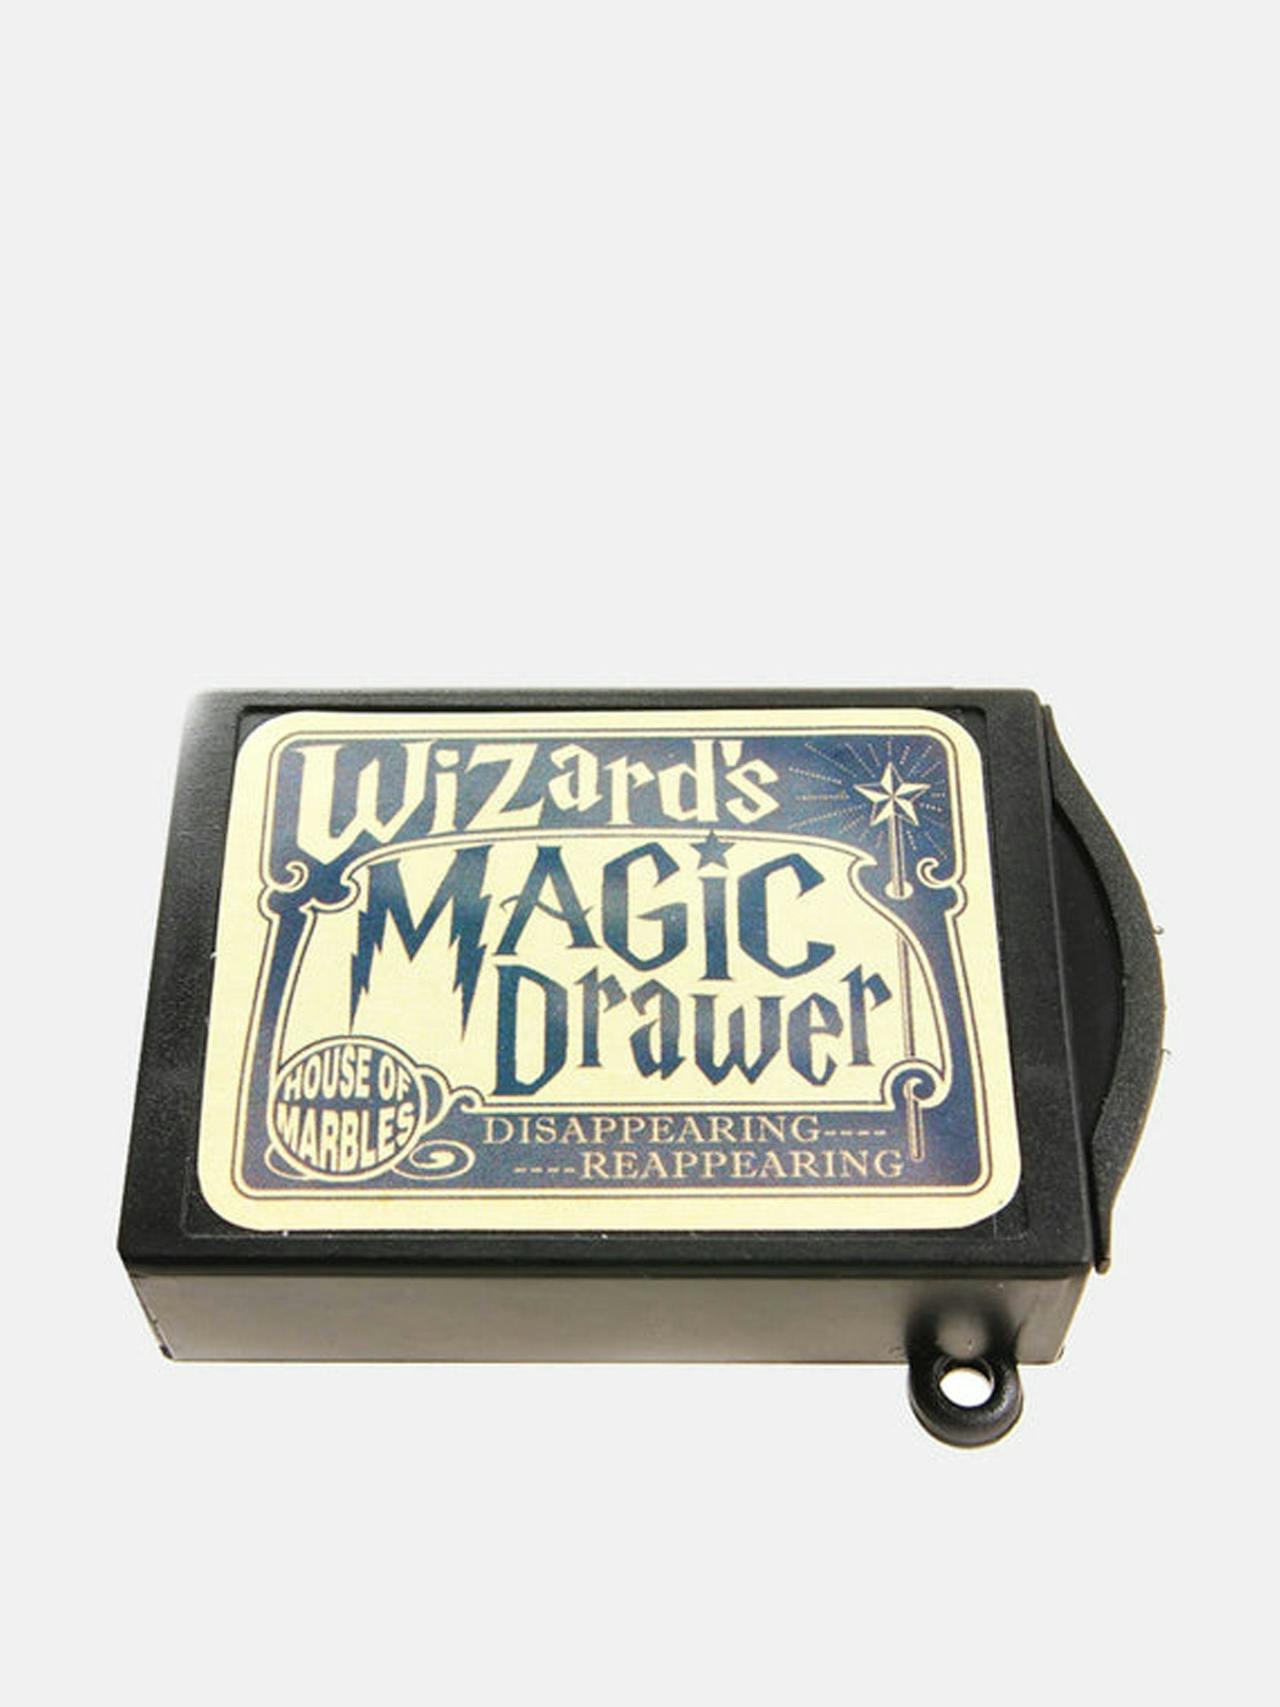 Magic drawer